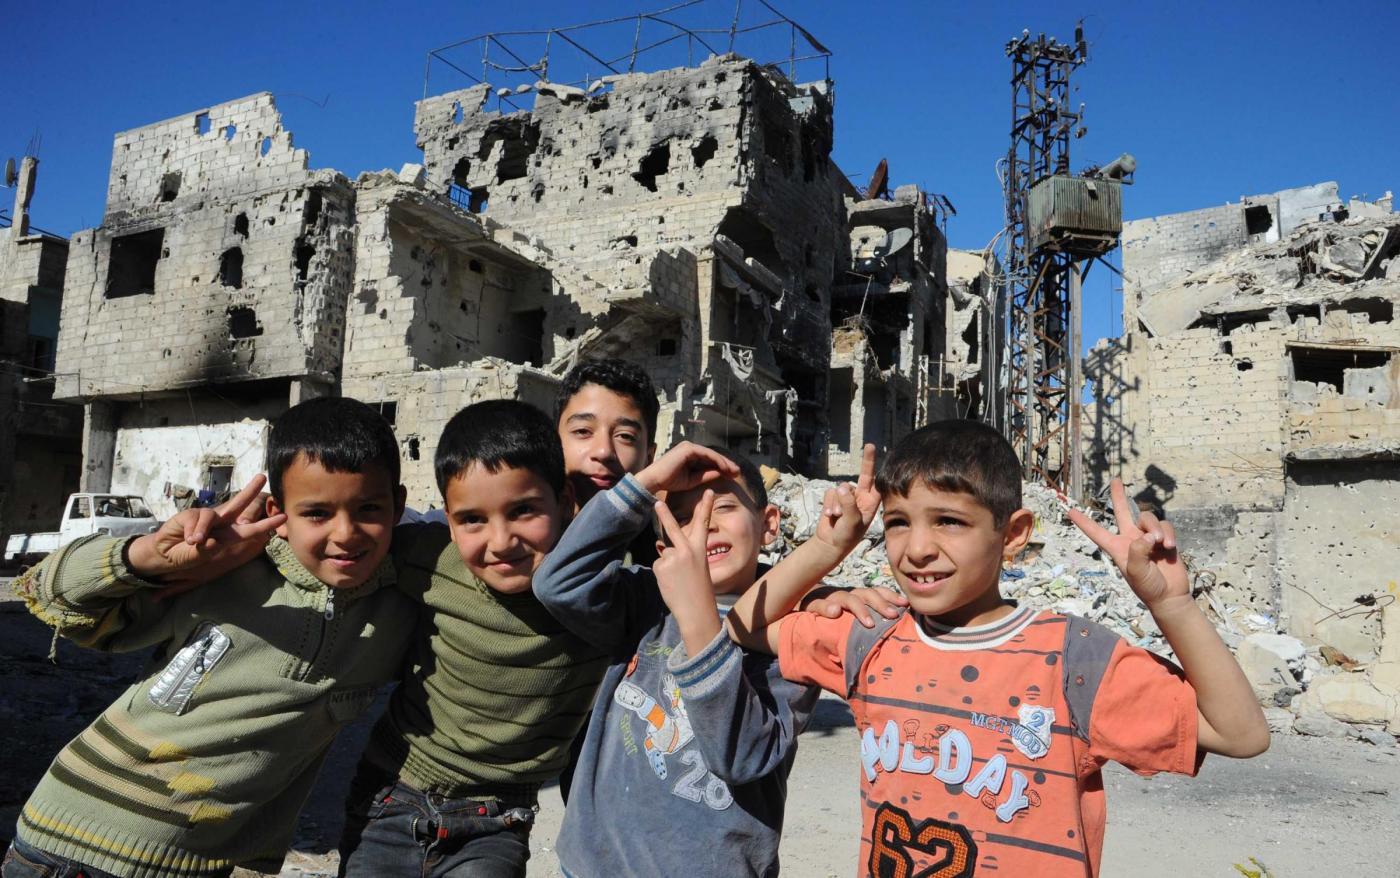 Guerra in Siria, il dramma dei bambini sotto assedio e in fuga dall’Isis